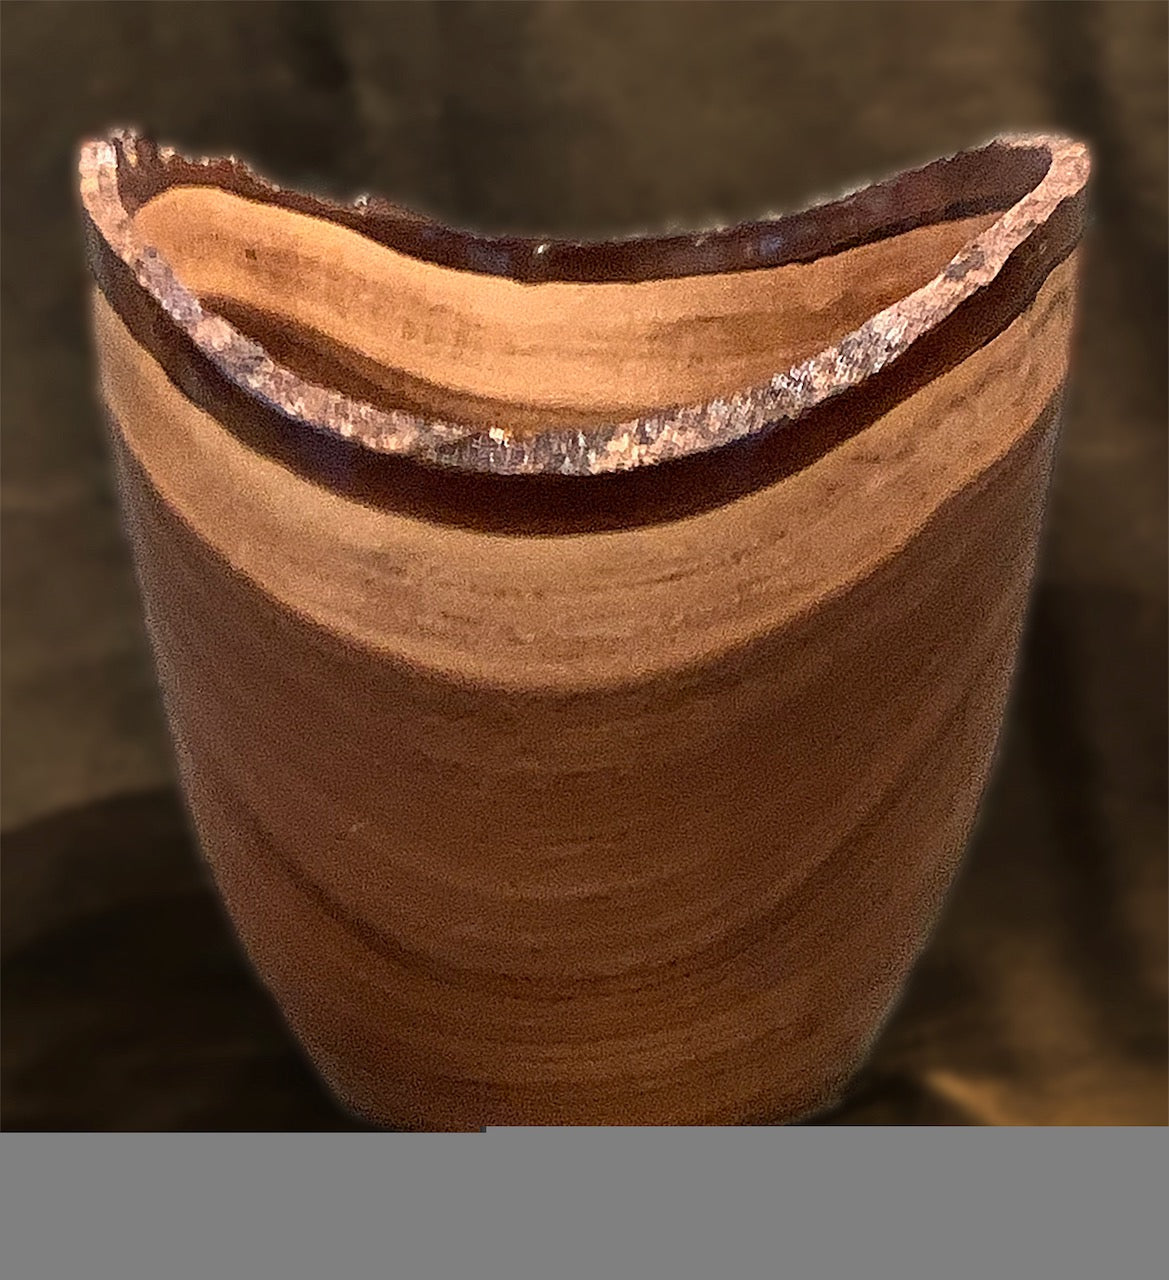 Craig Mason: Acacia Wood Natural Edge Bowl